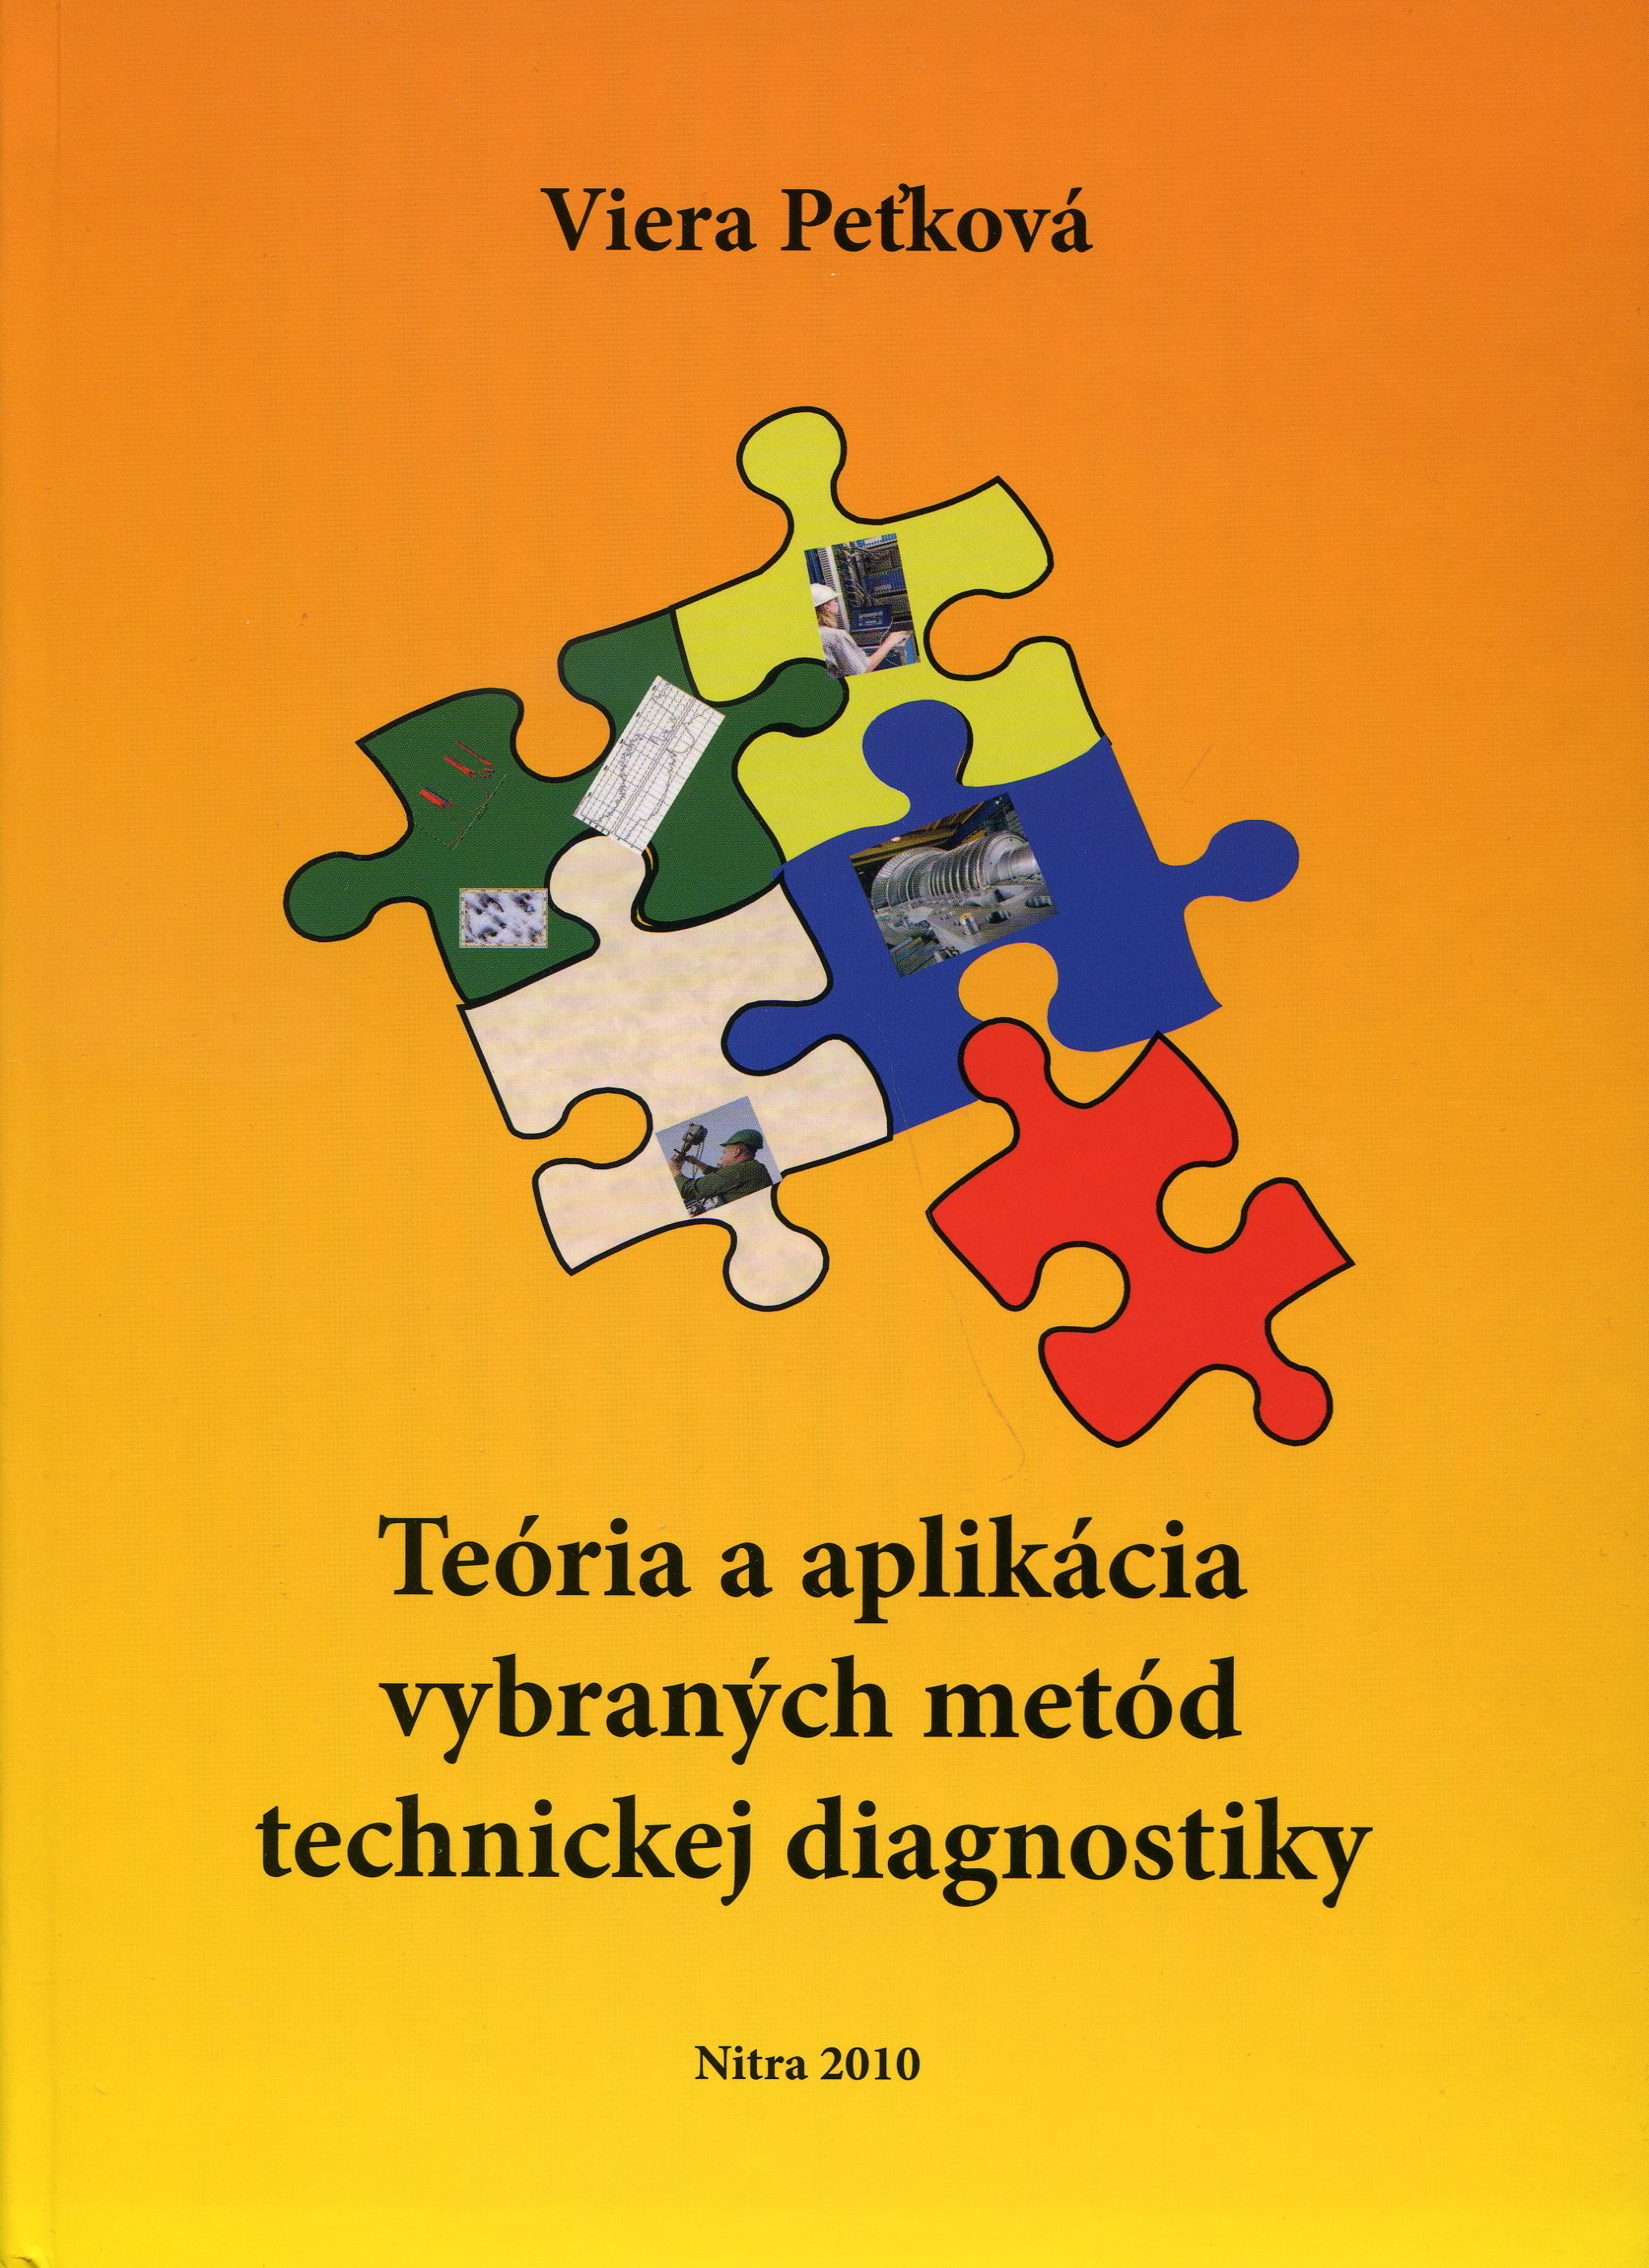 Teória a aplikácia vybraných metód technickej diagnostiky